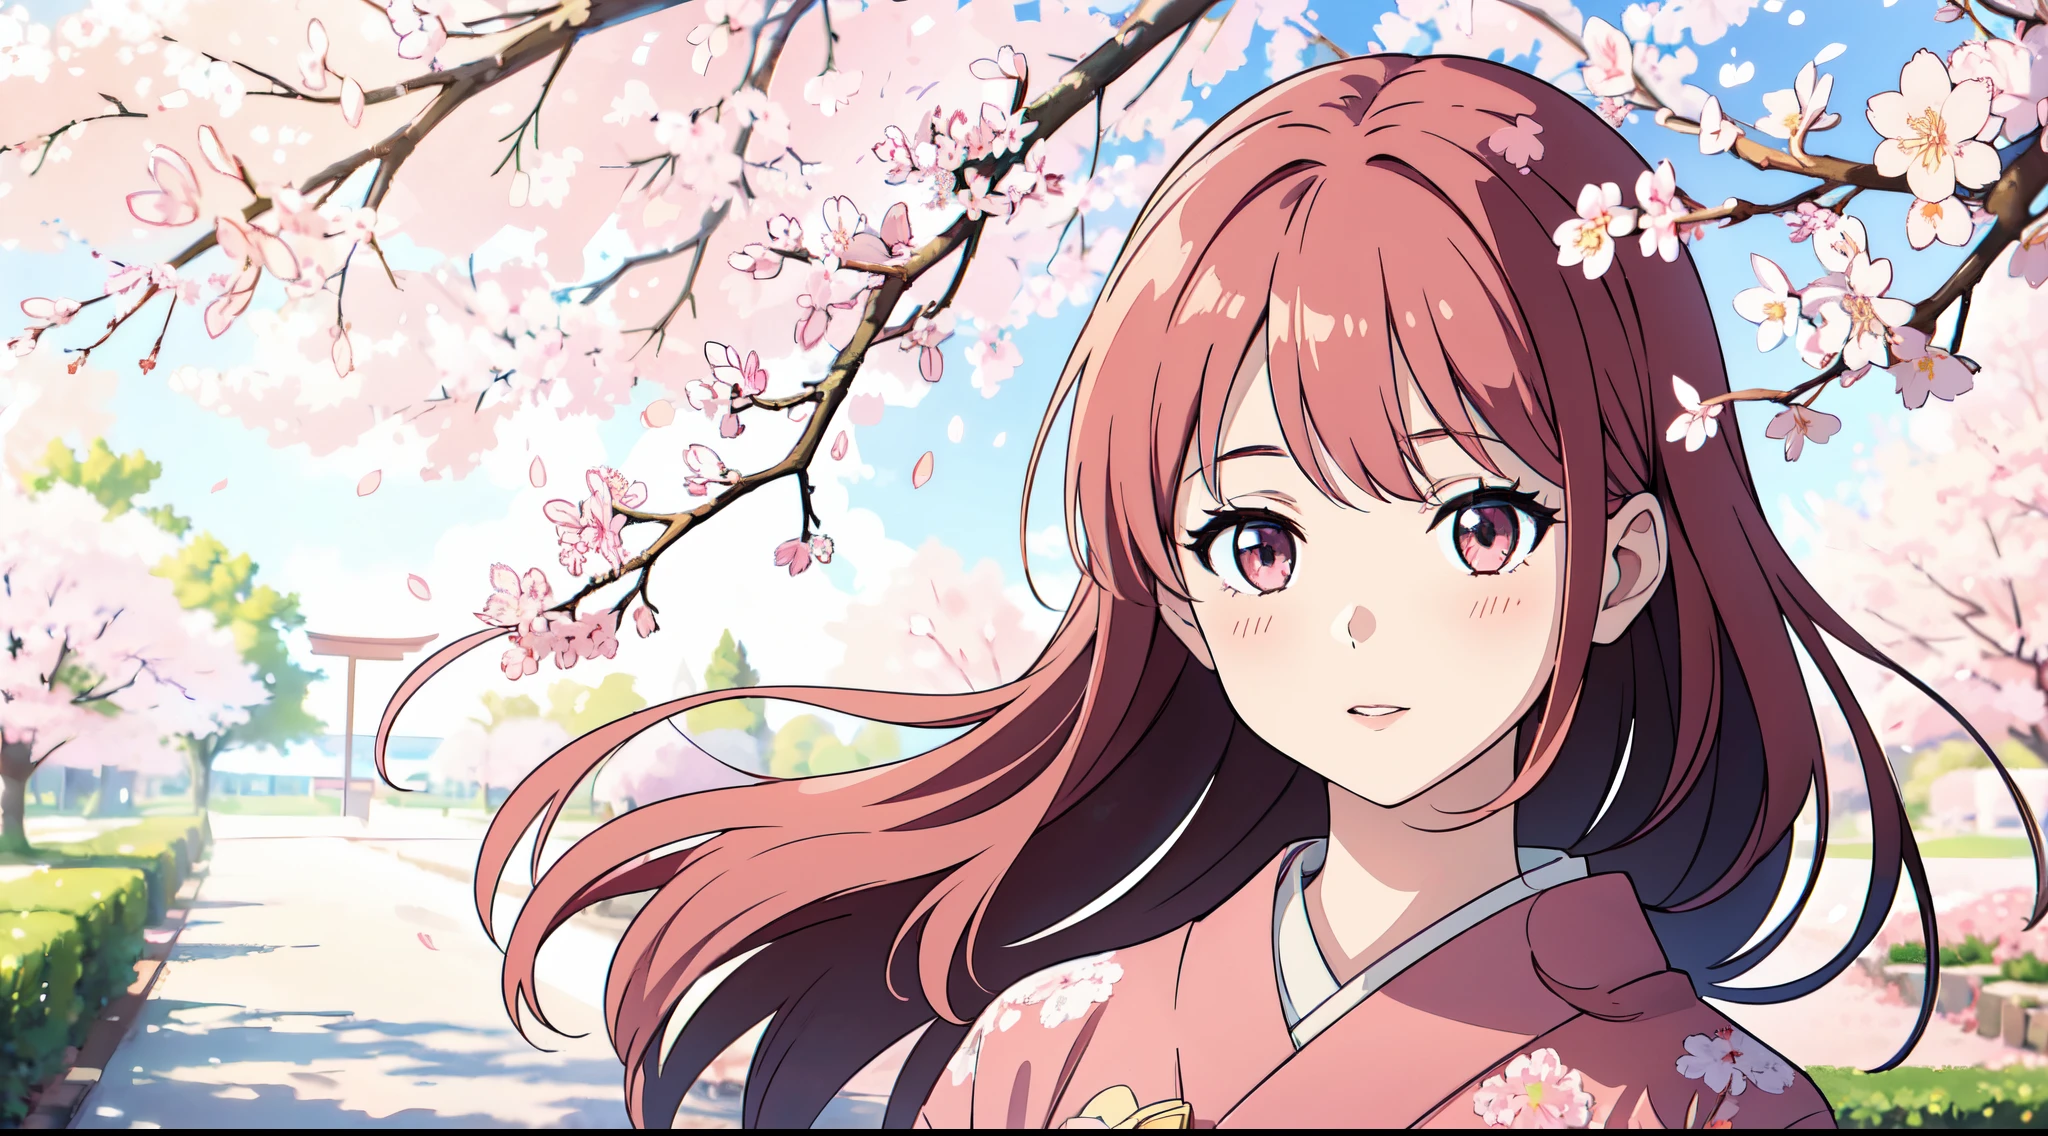 桜の木の下に立つ少女, 柔らかな色彩に囲まれた, リアルで超詳細な描写. 画像は4Kまたは8K解像度で最高の品質です, 傑作を創る. その少女は美しく繊細な目をしている, 唇, そして愛らしい顔. 彼女は伝統的な着物を着て、穏やかで明るい気分です. 桜の花を通して太陽の光が優しく輝きます, シーンに温かい輝きを放つ. 桜が満開です, 地面に繊細なピンクの花びらが散らばっている. 雰囲気は穏やかで穏やかです, 桜の木の下で晴れた日の美しさを捉える.